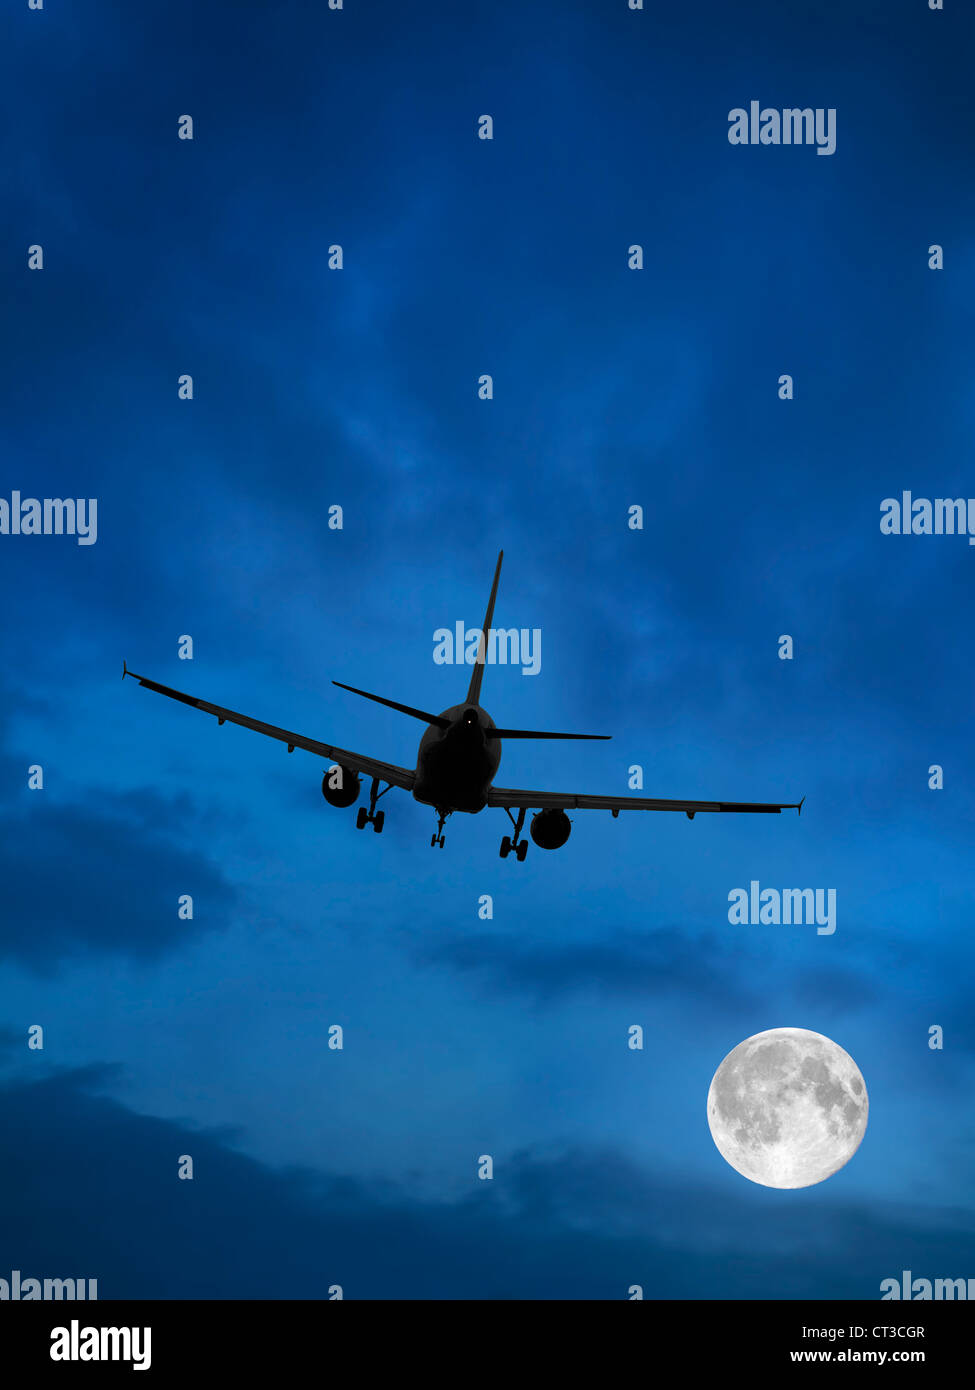 Avion et Lune dans le ciel bleu Banque D'Images